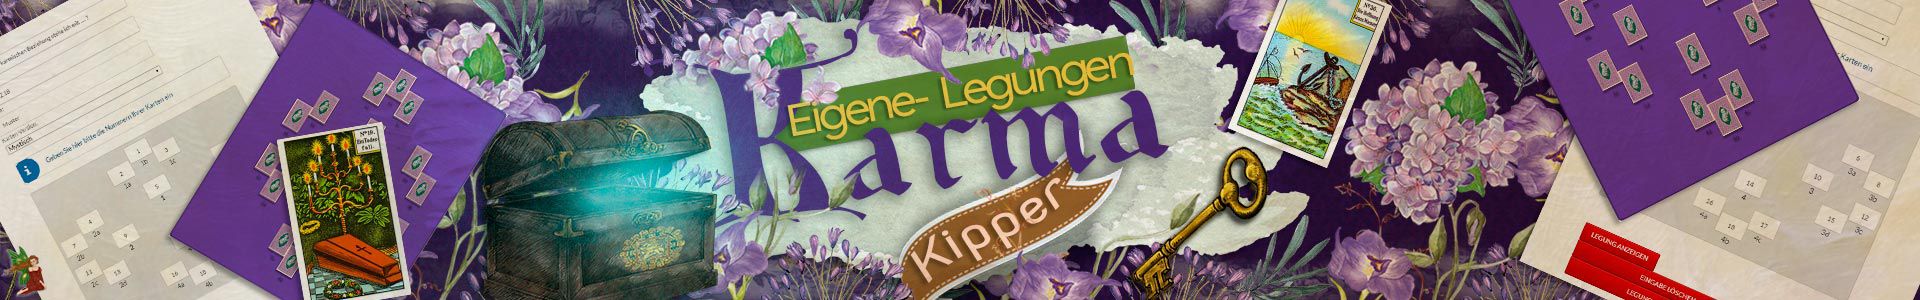 Kipper eigene Legungen für Karma-Fragen